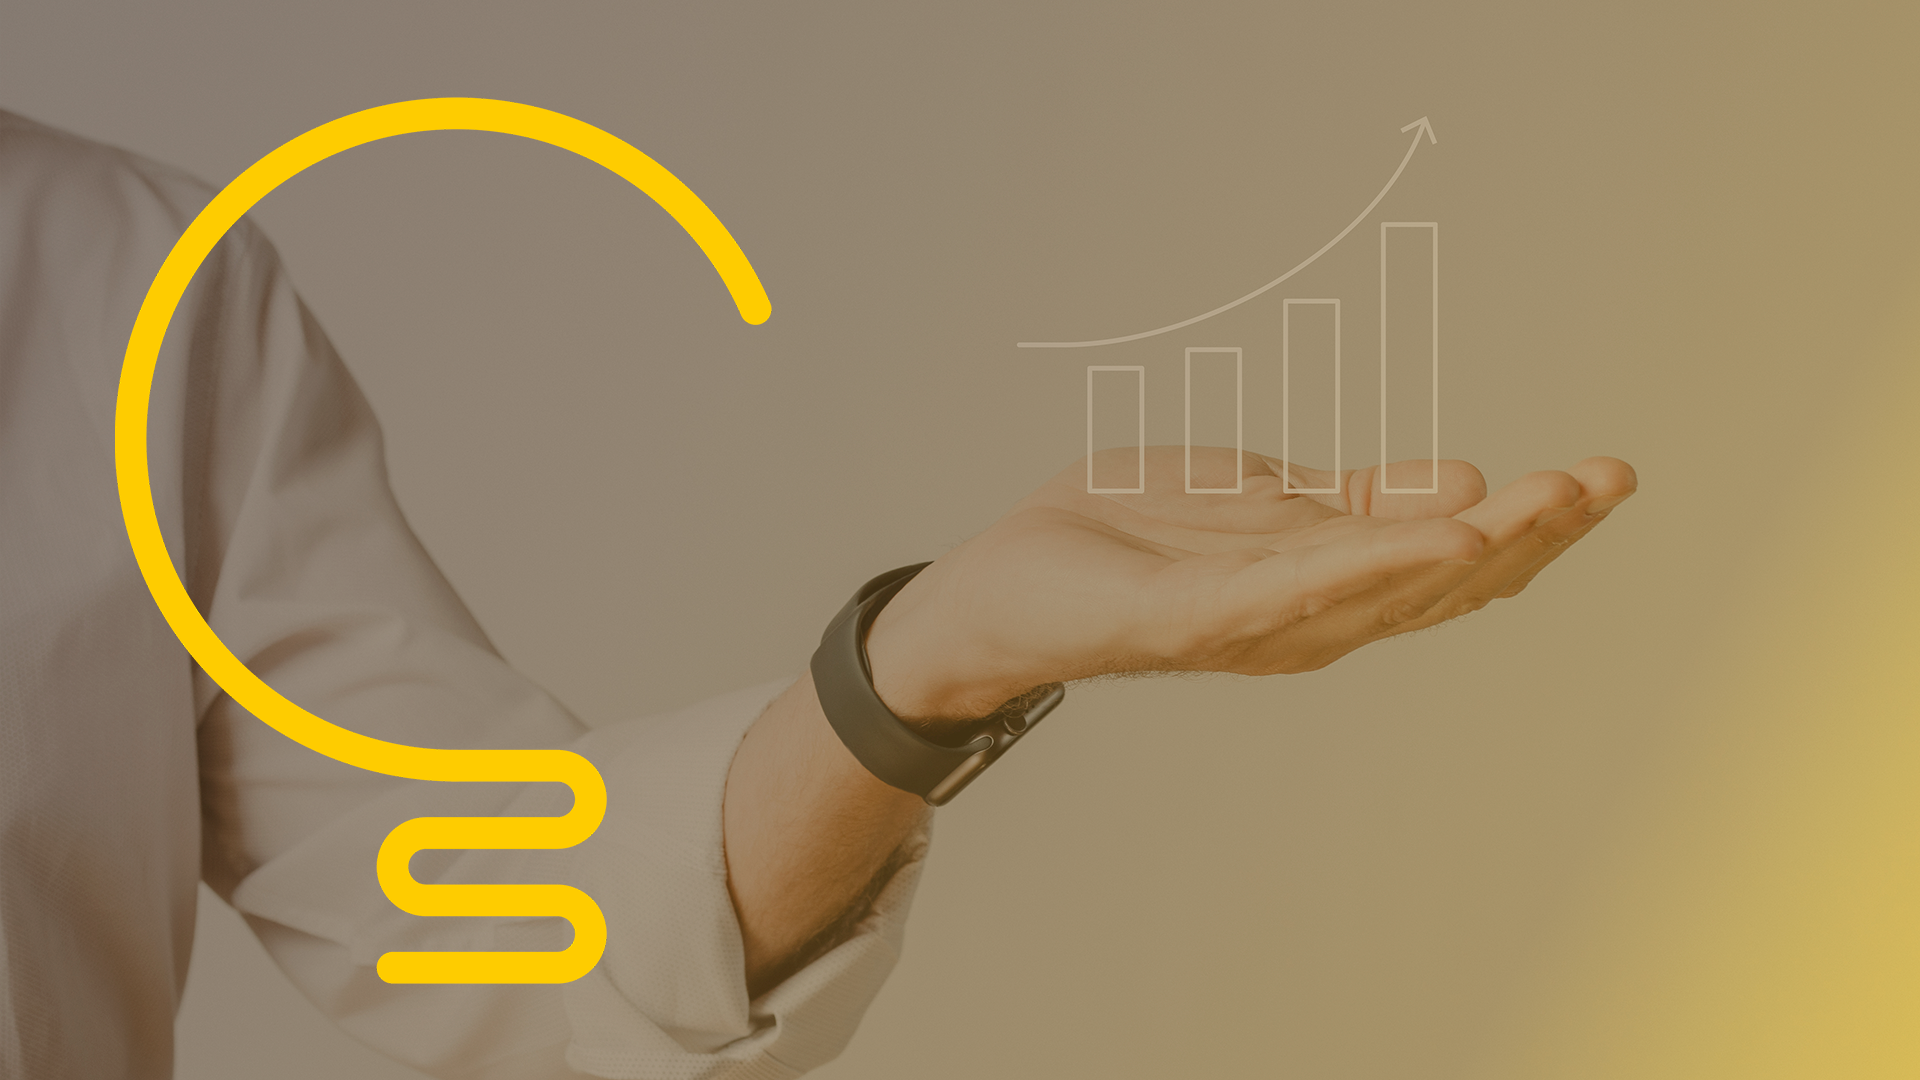 Slide 3 com a Logo da Lus contabilidade grande em amarelo e uma mão estendida com um gráfico ascendente